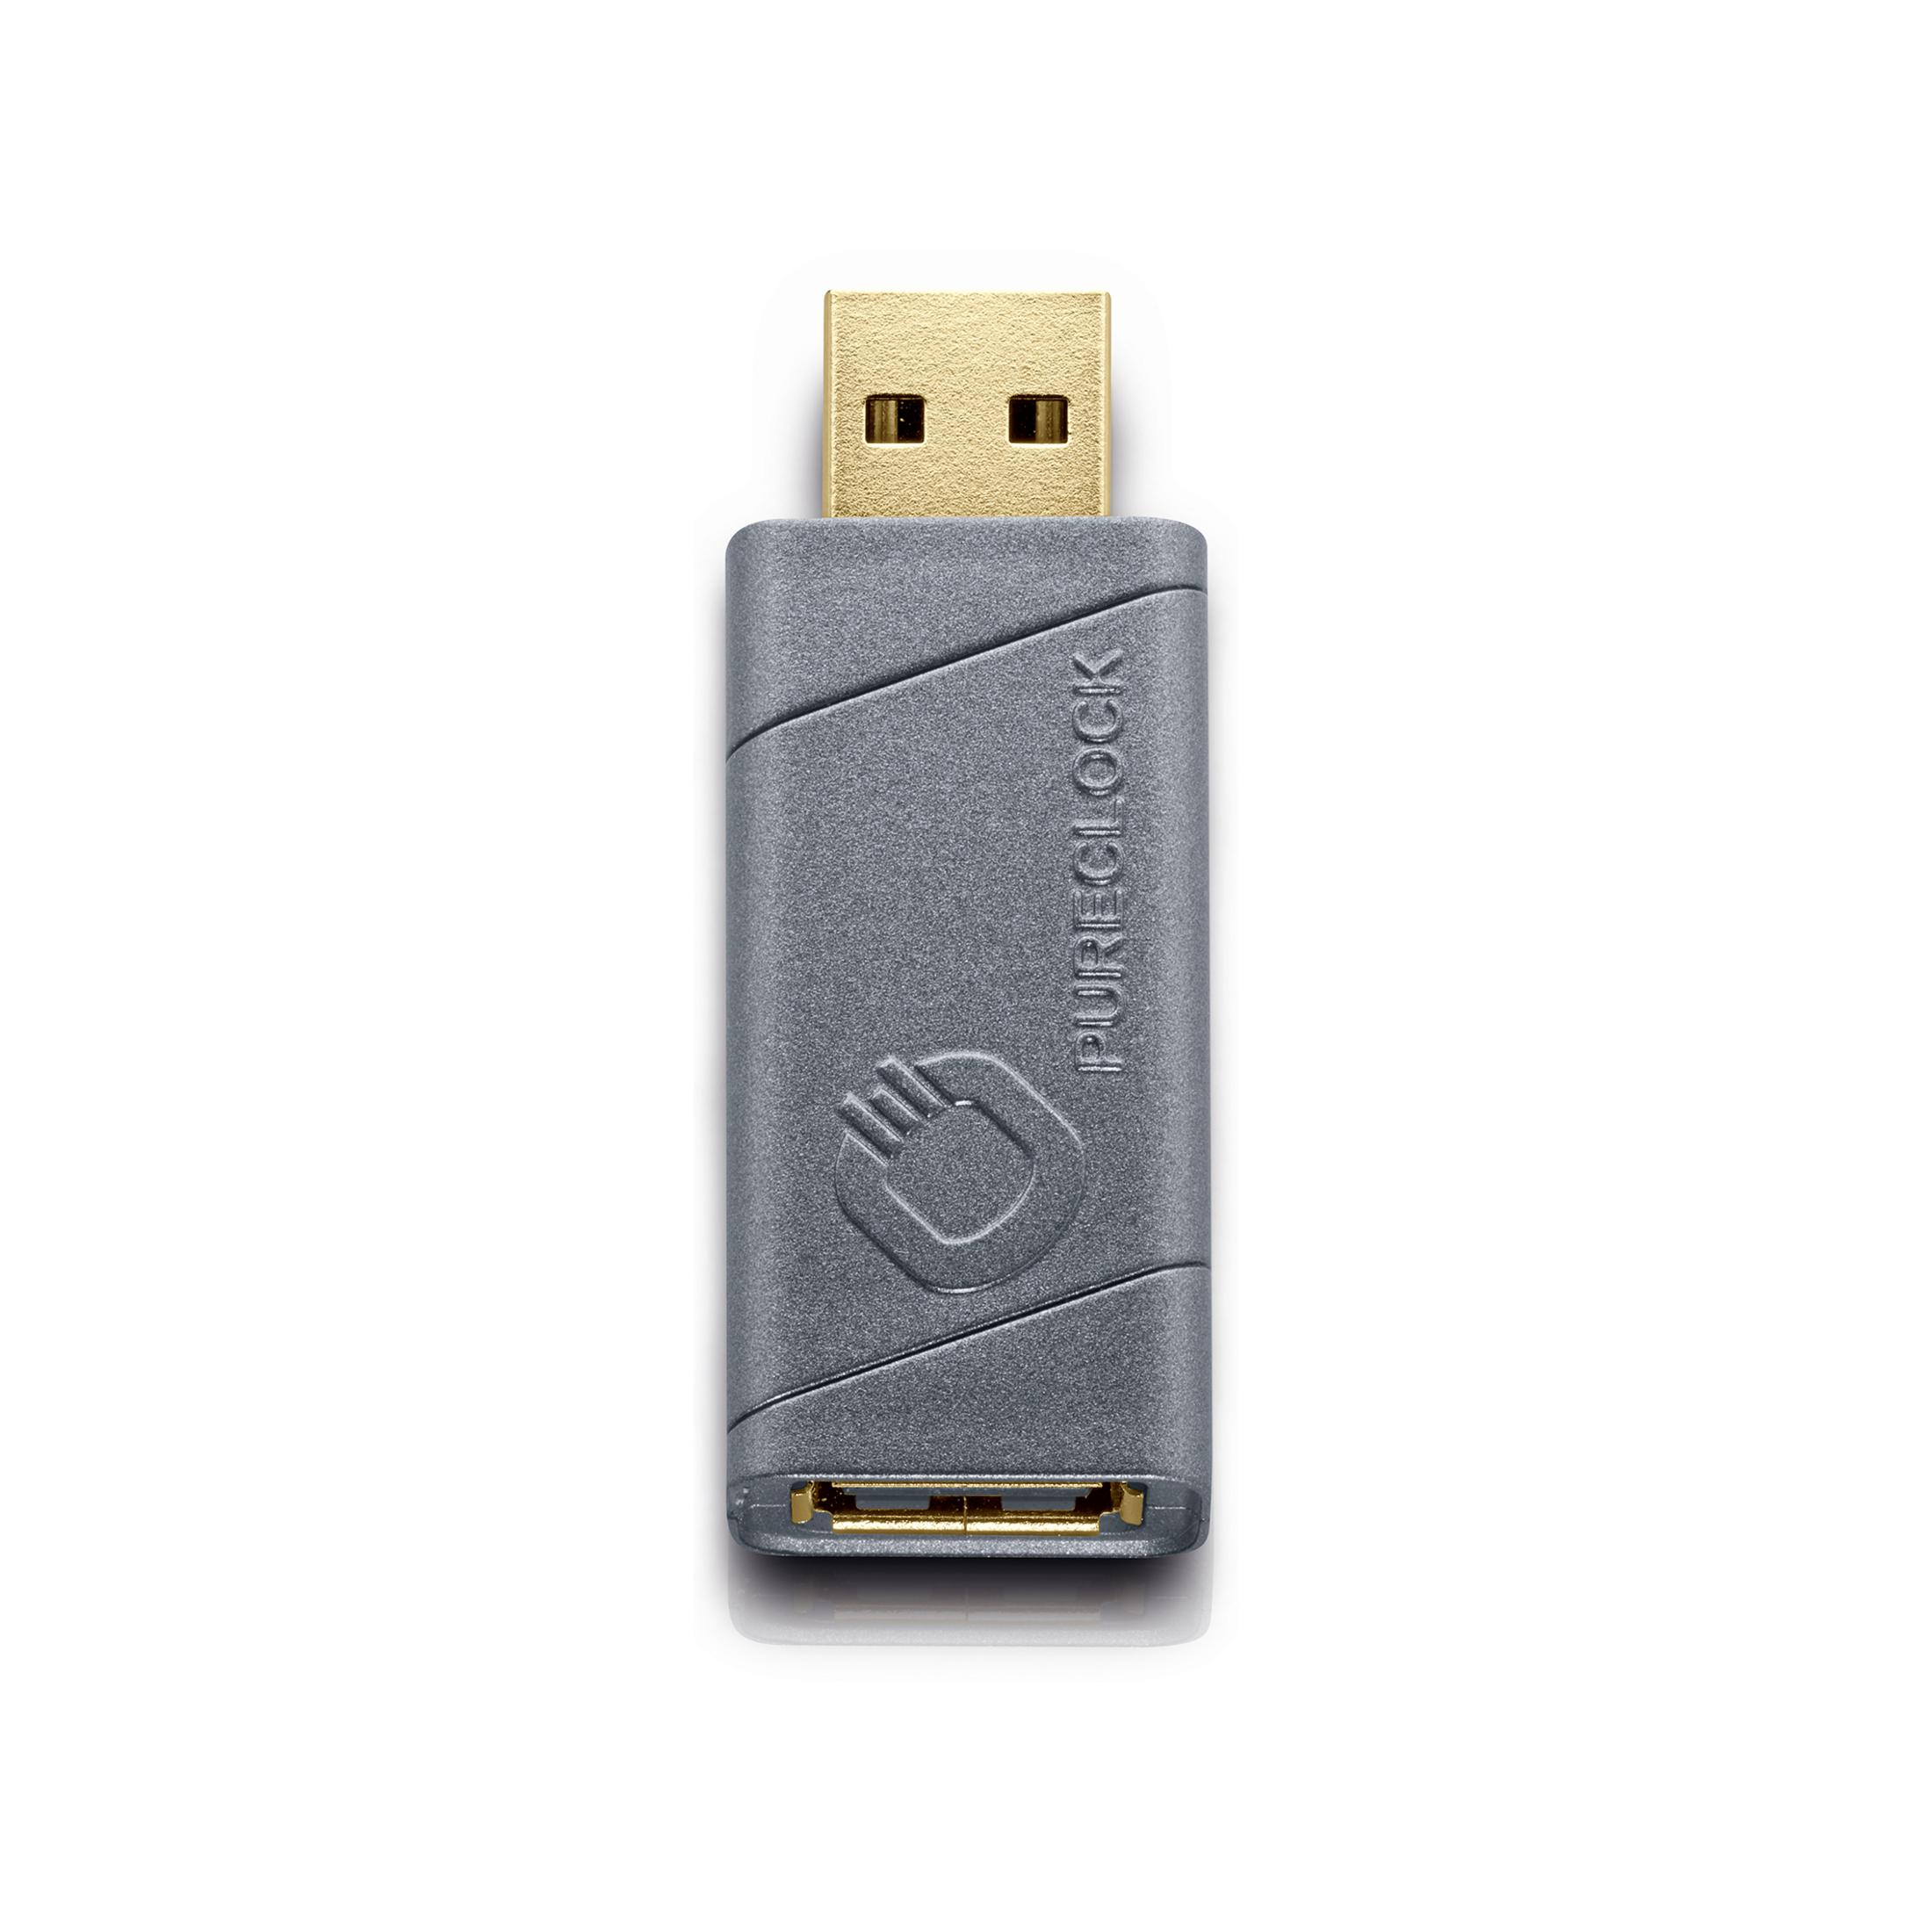 D1C6075 OEHLBACH Jittercleaner PURECLOCK-USB JITTER CLEANER,